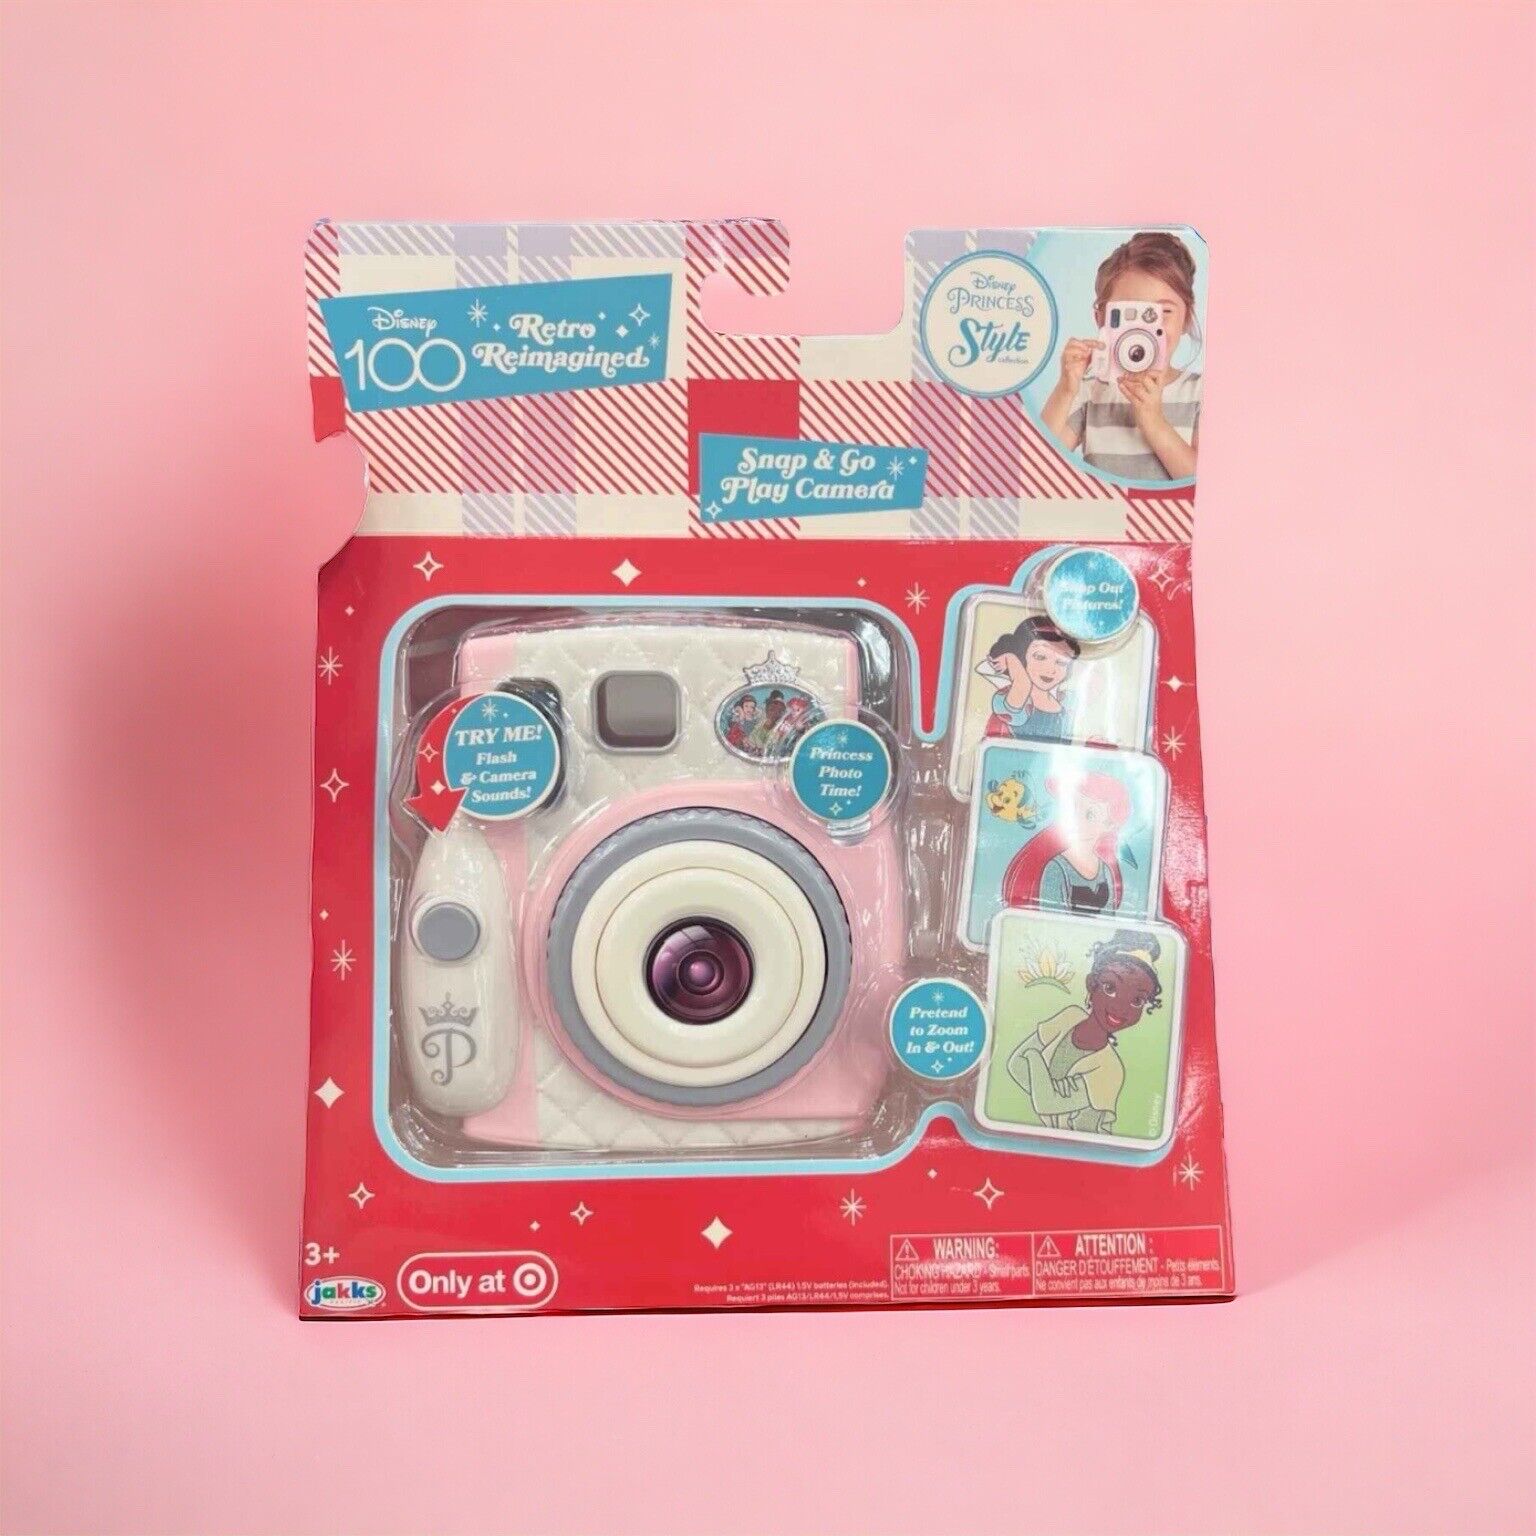 Disney 100 Princess Retro Reimagined Snap & Go Pretend Play Camera Target